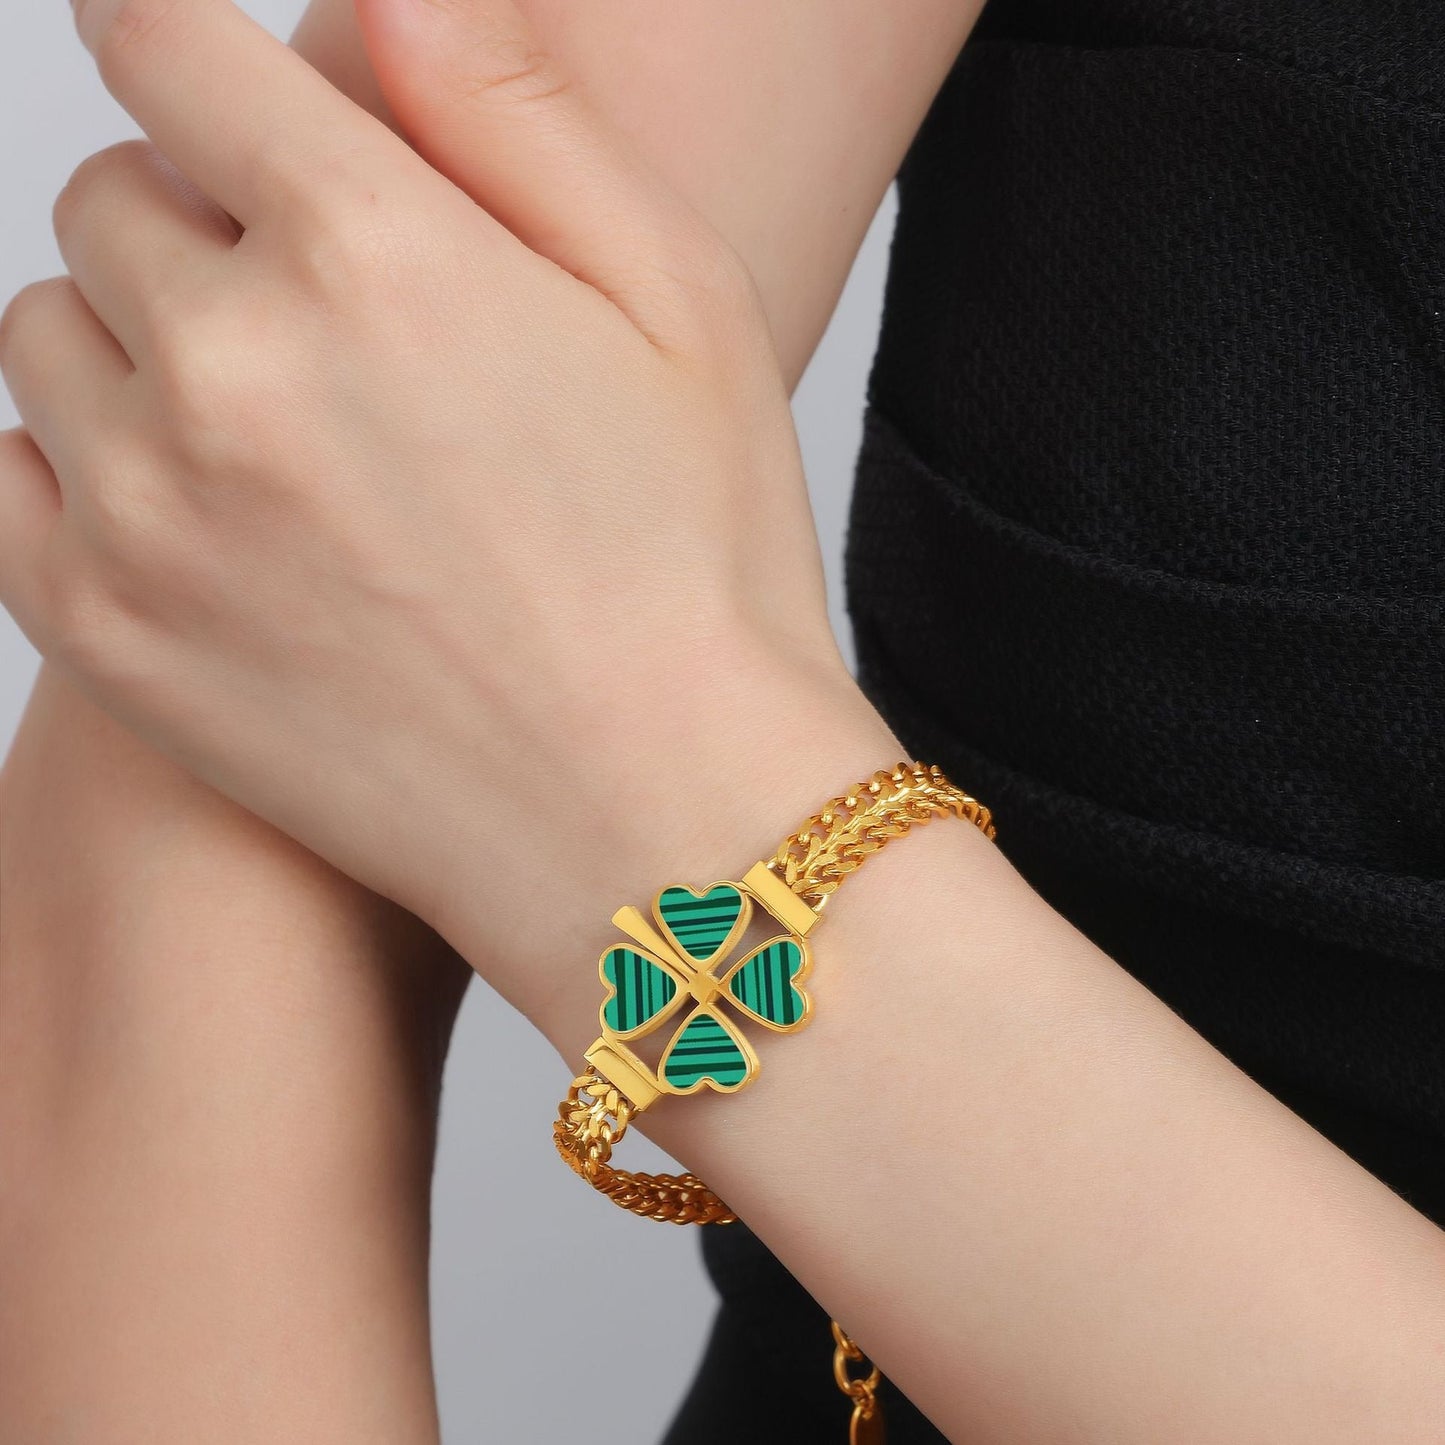 18K gold four-leaf clover flower with gemstone pastoral necklace-bracelet-earrings set - JuVons